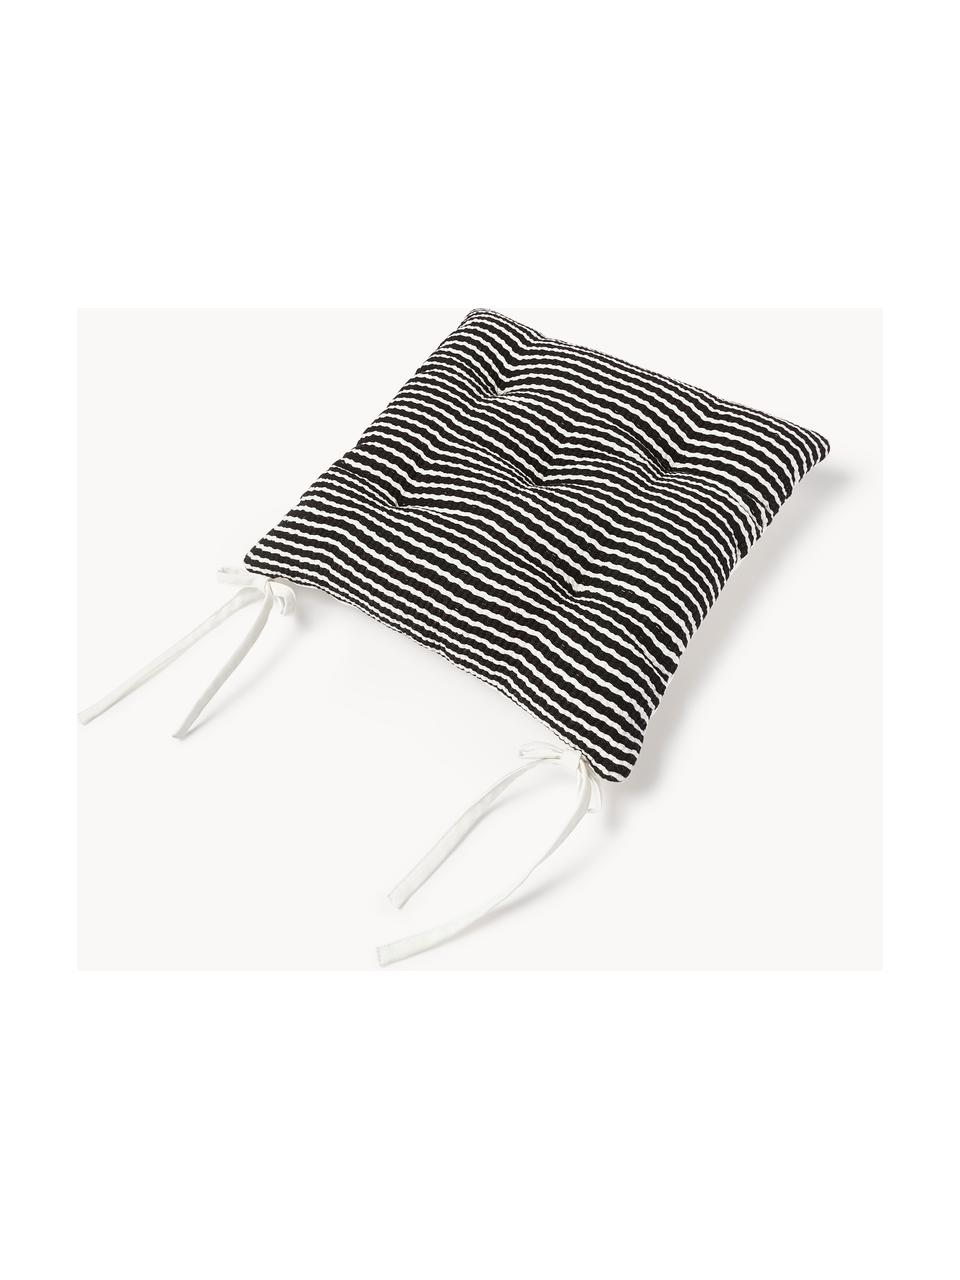 Coussins d'assise en coton rayé Silla, 2 pièces, Noir, blanc, larg. 40 x long. 40 cm